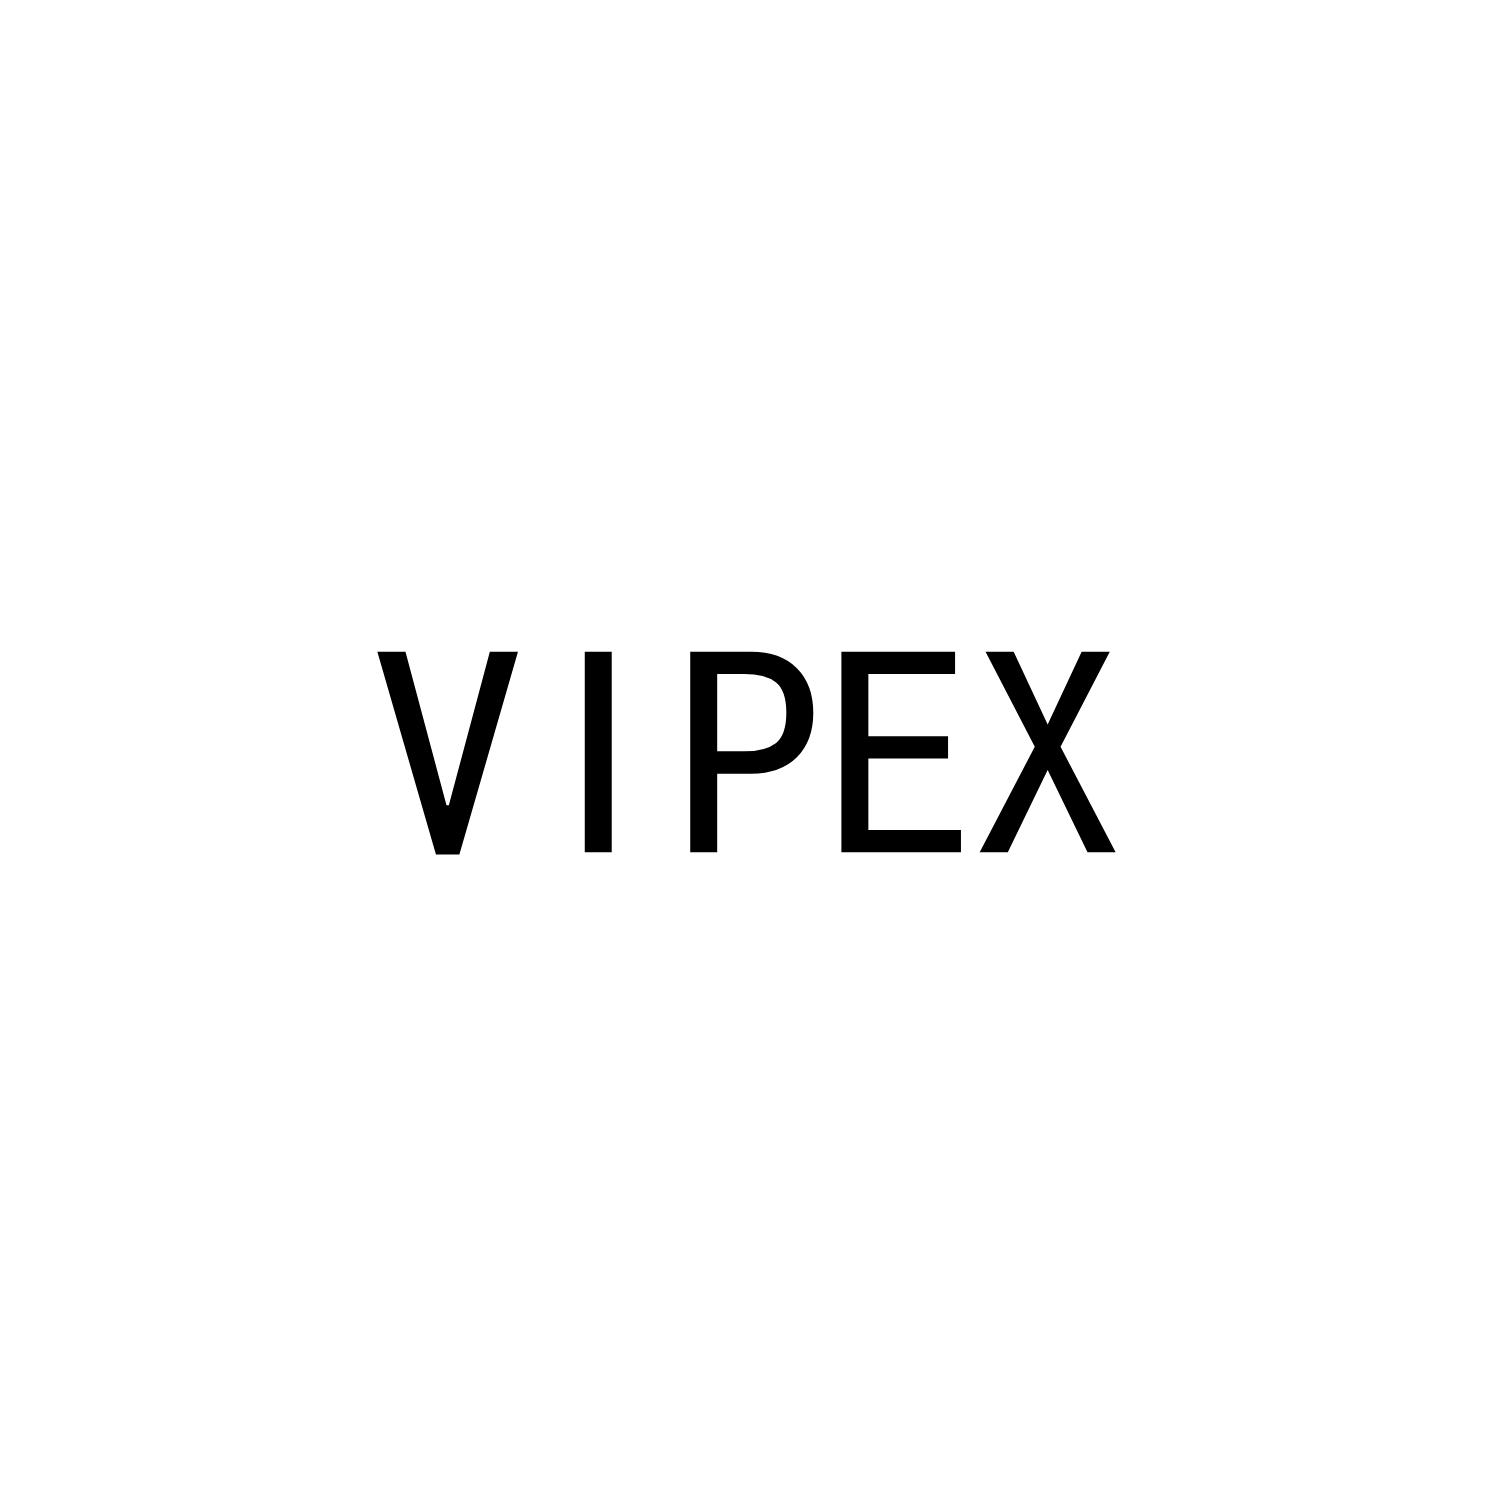 VIPEX